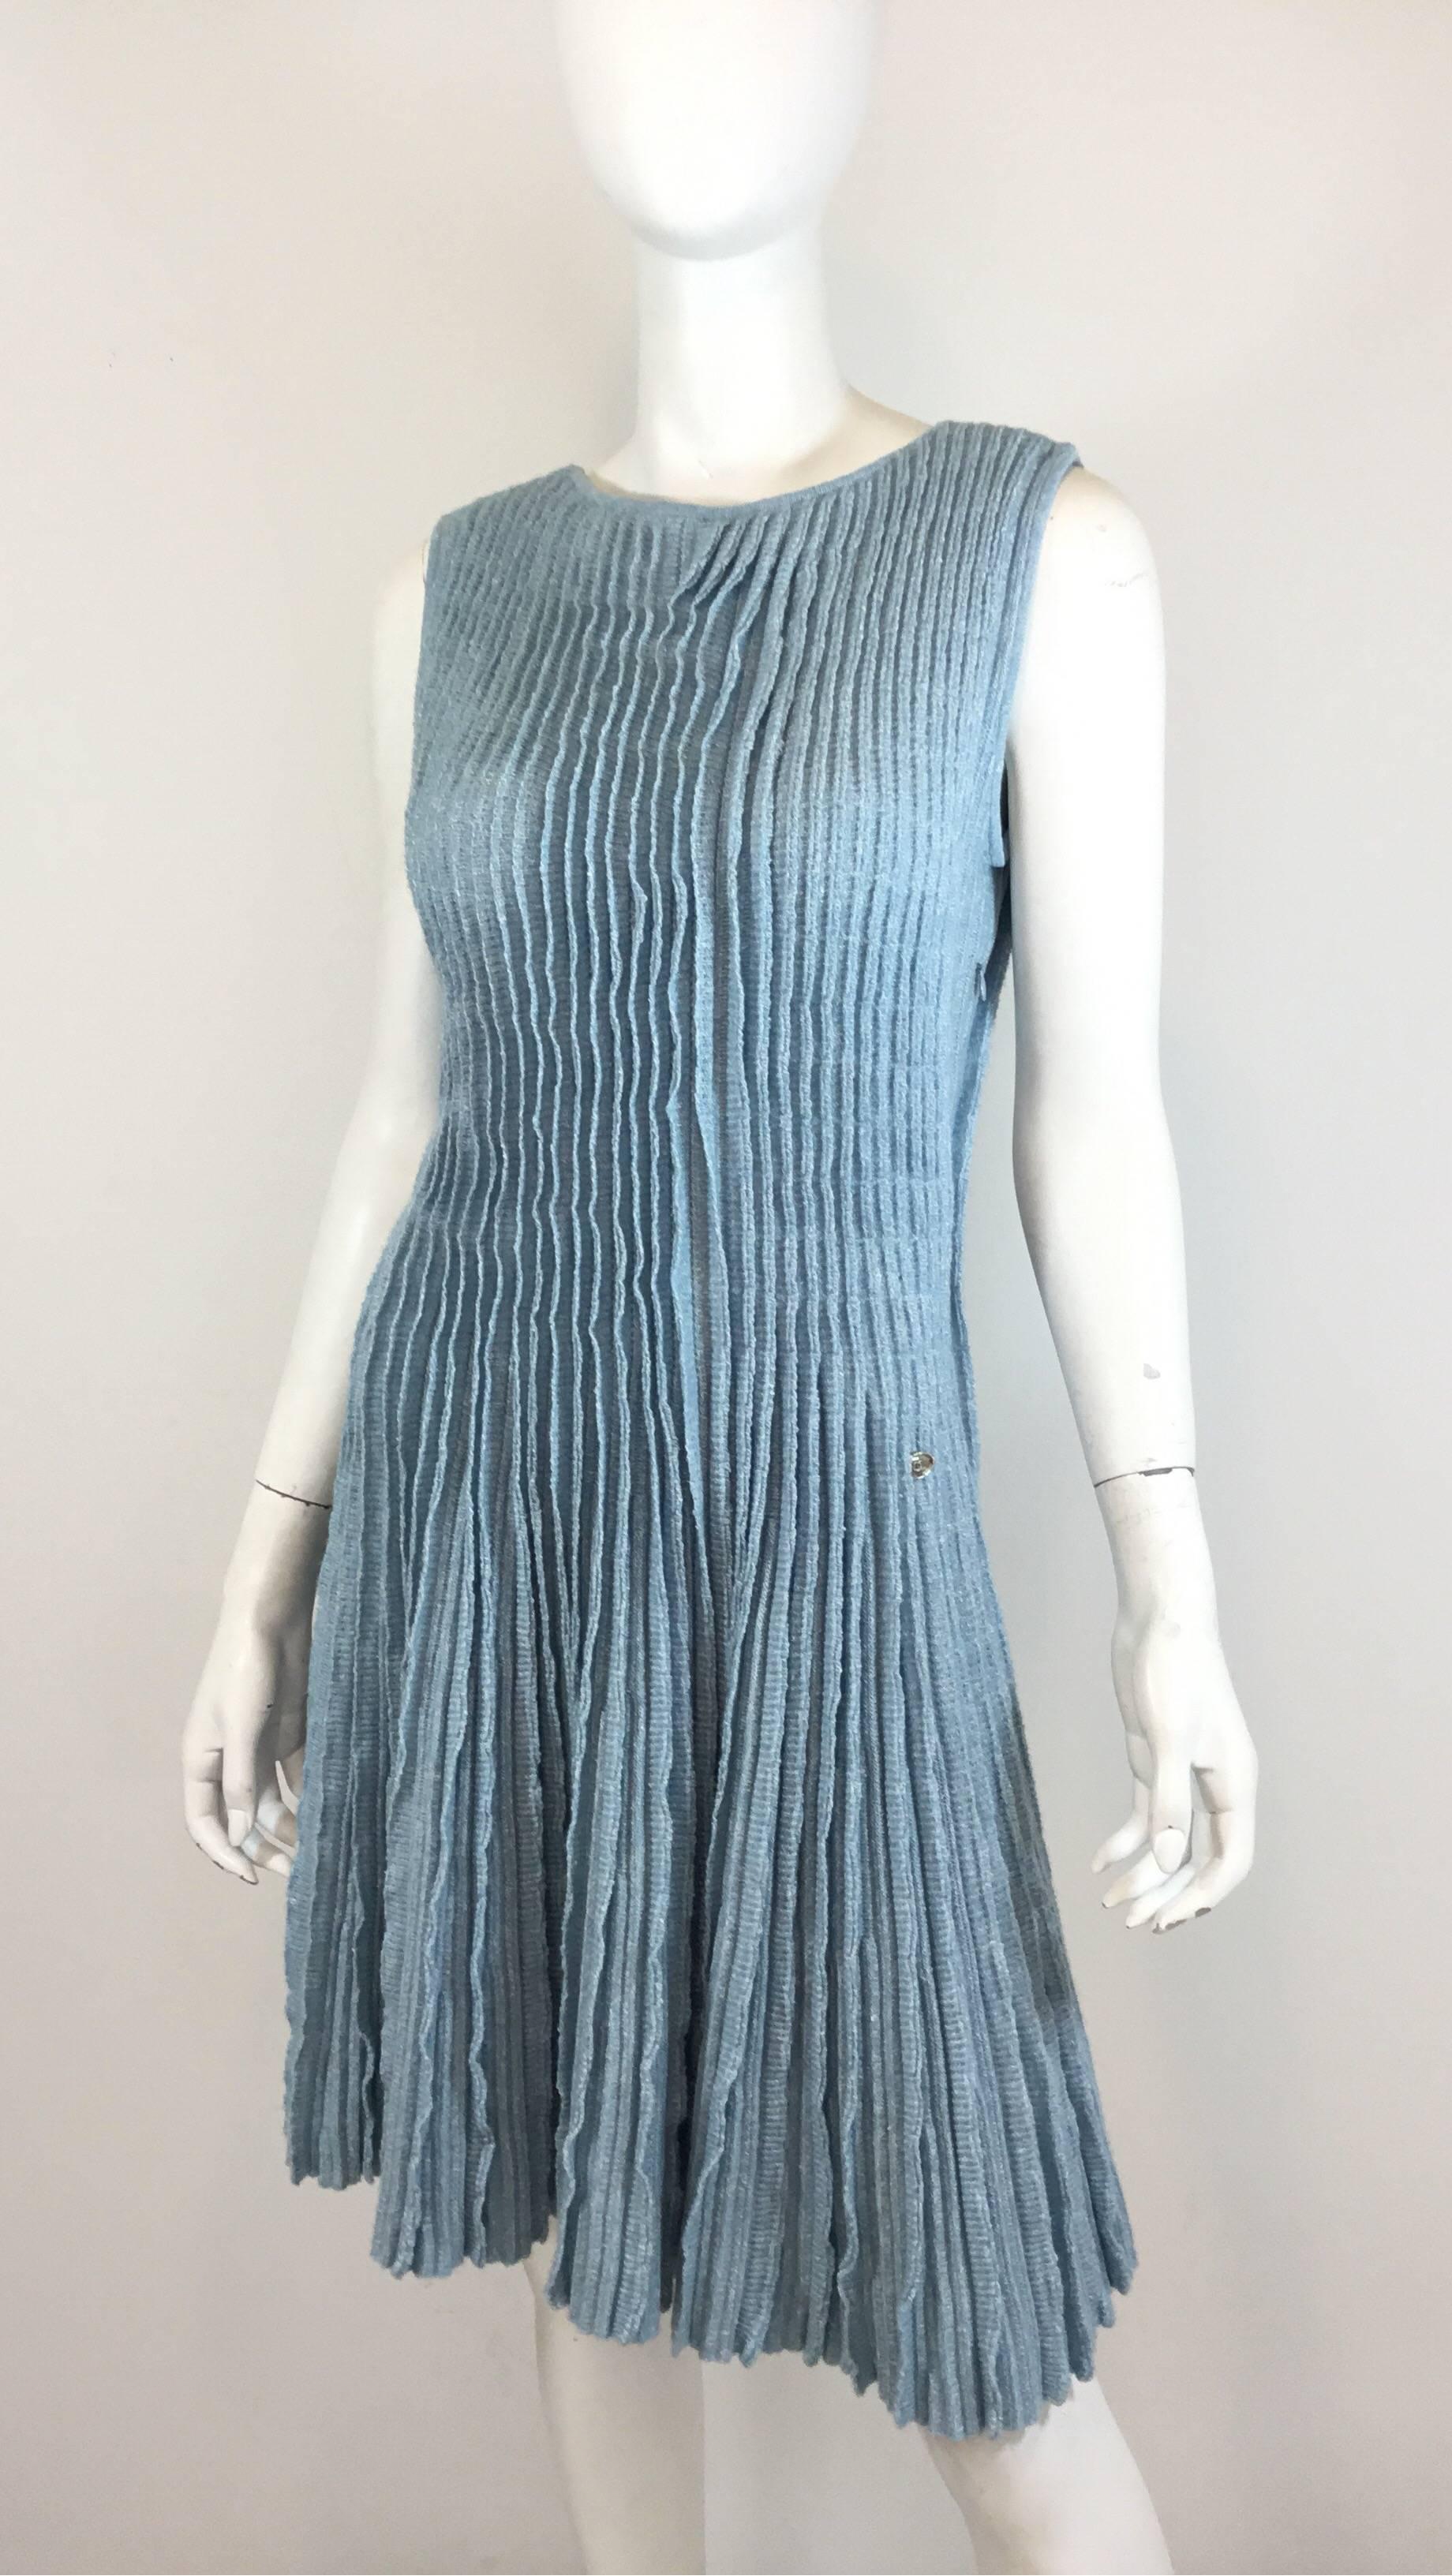 Wunderschönes Chanel-Kleid aus hellblauem Strick, bestehend aus 50% Leinen und 50% Kaschmir, mit plissiertem/gerafftem Detail. Das Kleid hat einen seitlichen Reißverschluss, ist mit Größe 40 gekennzeichnet und wurde in Italien hergestellt.

Büste